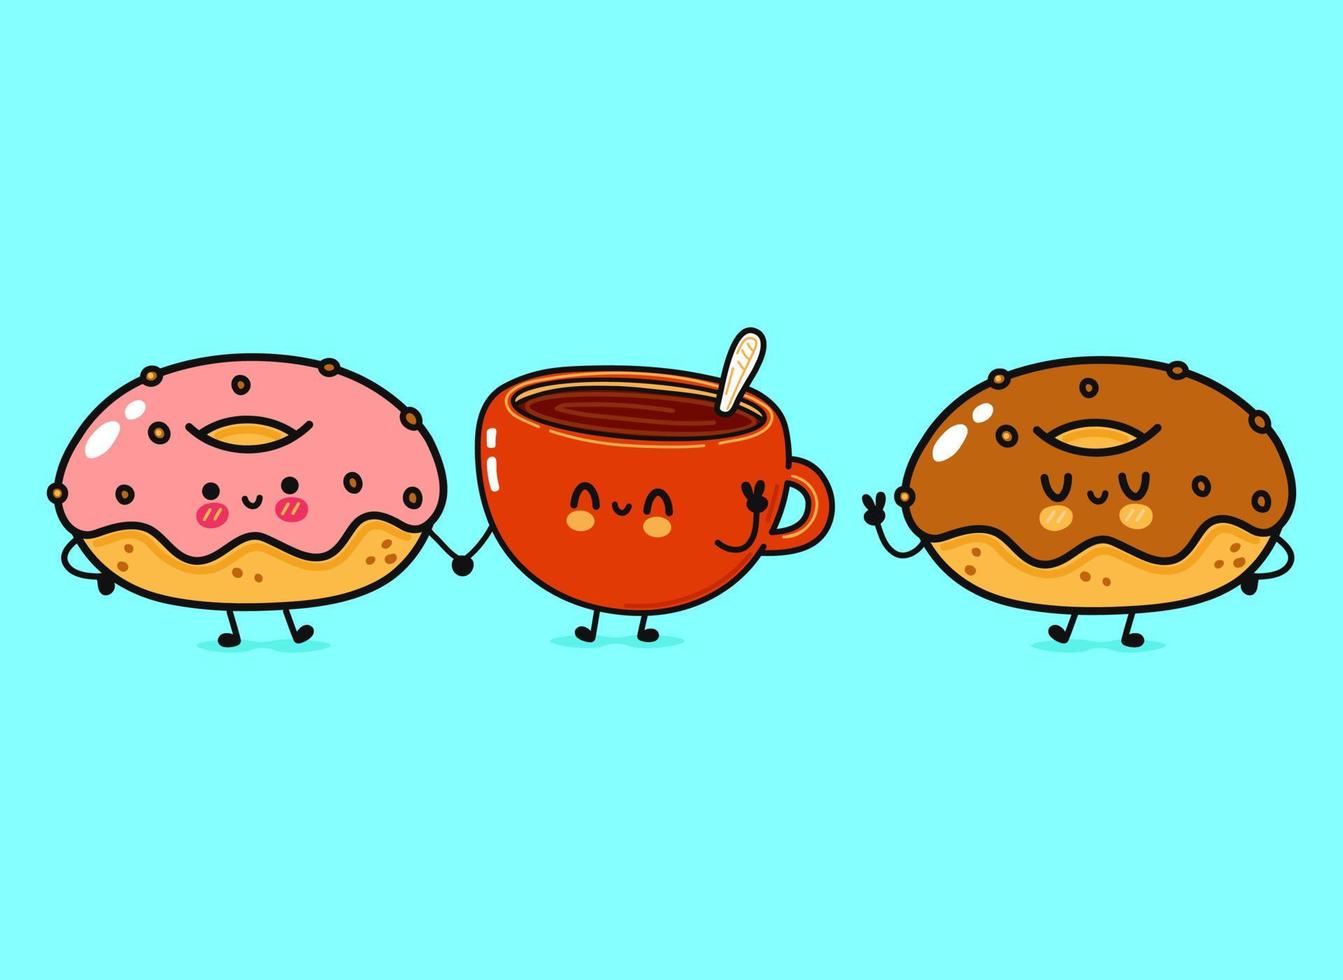 süßer, lustiger fröhlicher tasse kaffee und donuts charakter. Vektor handgezeichnete kawaii Zeichentrickfiguren, Illustrationssymbol. lustige cartoon tasse kaffee und donuts freunde konzept